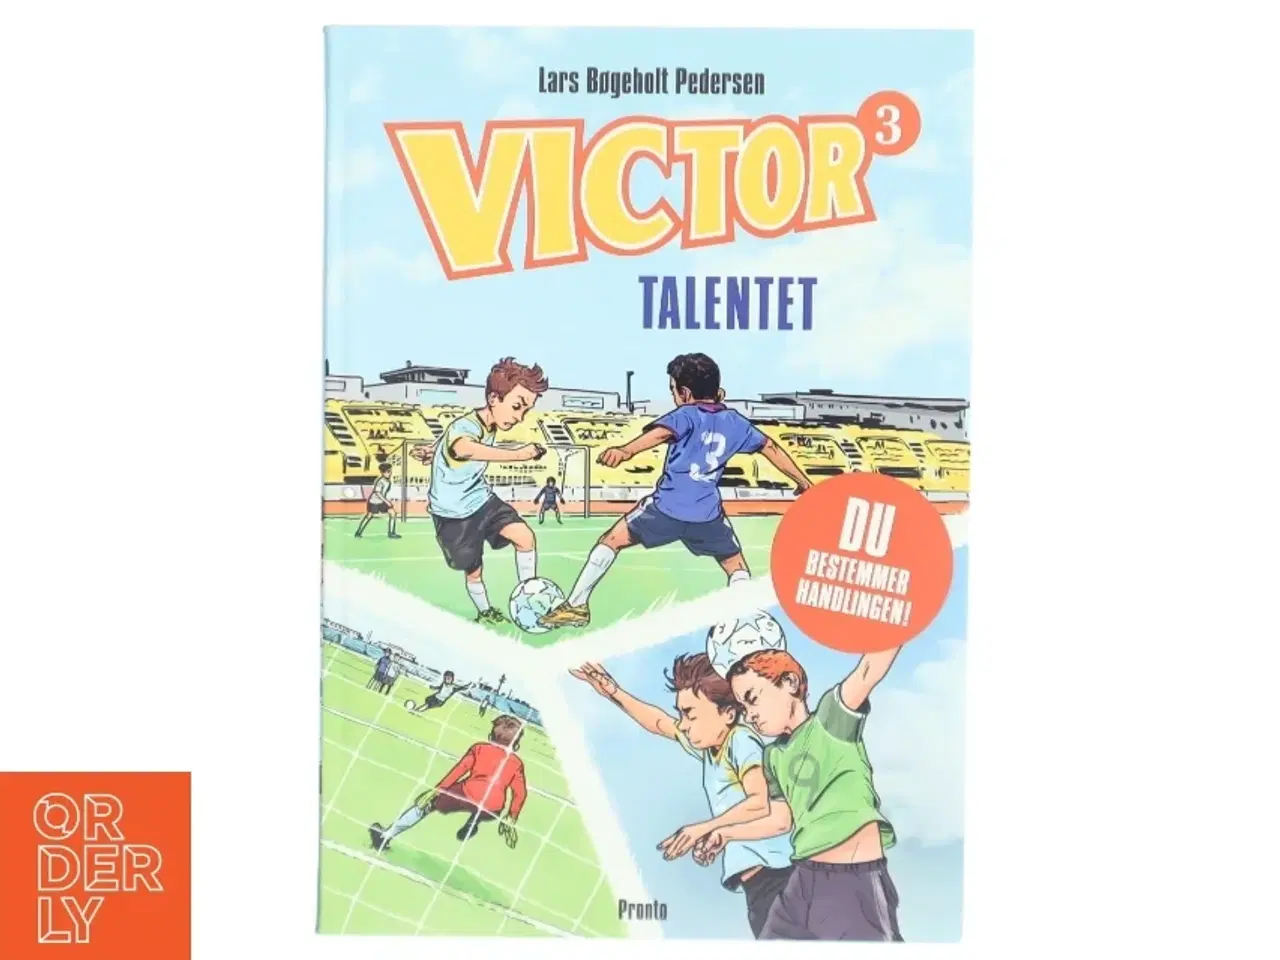 Billede 1 - 'Victor 3 - Talentet' af Lars Bøgeholt Pedersen (bog) fra Pronto